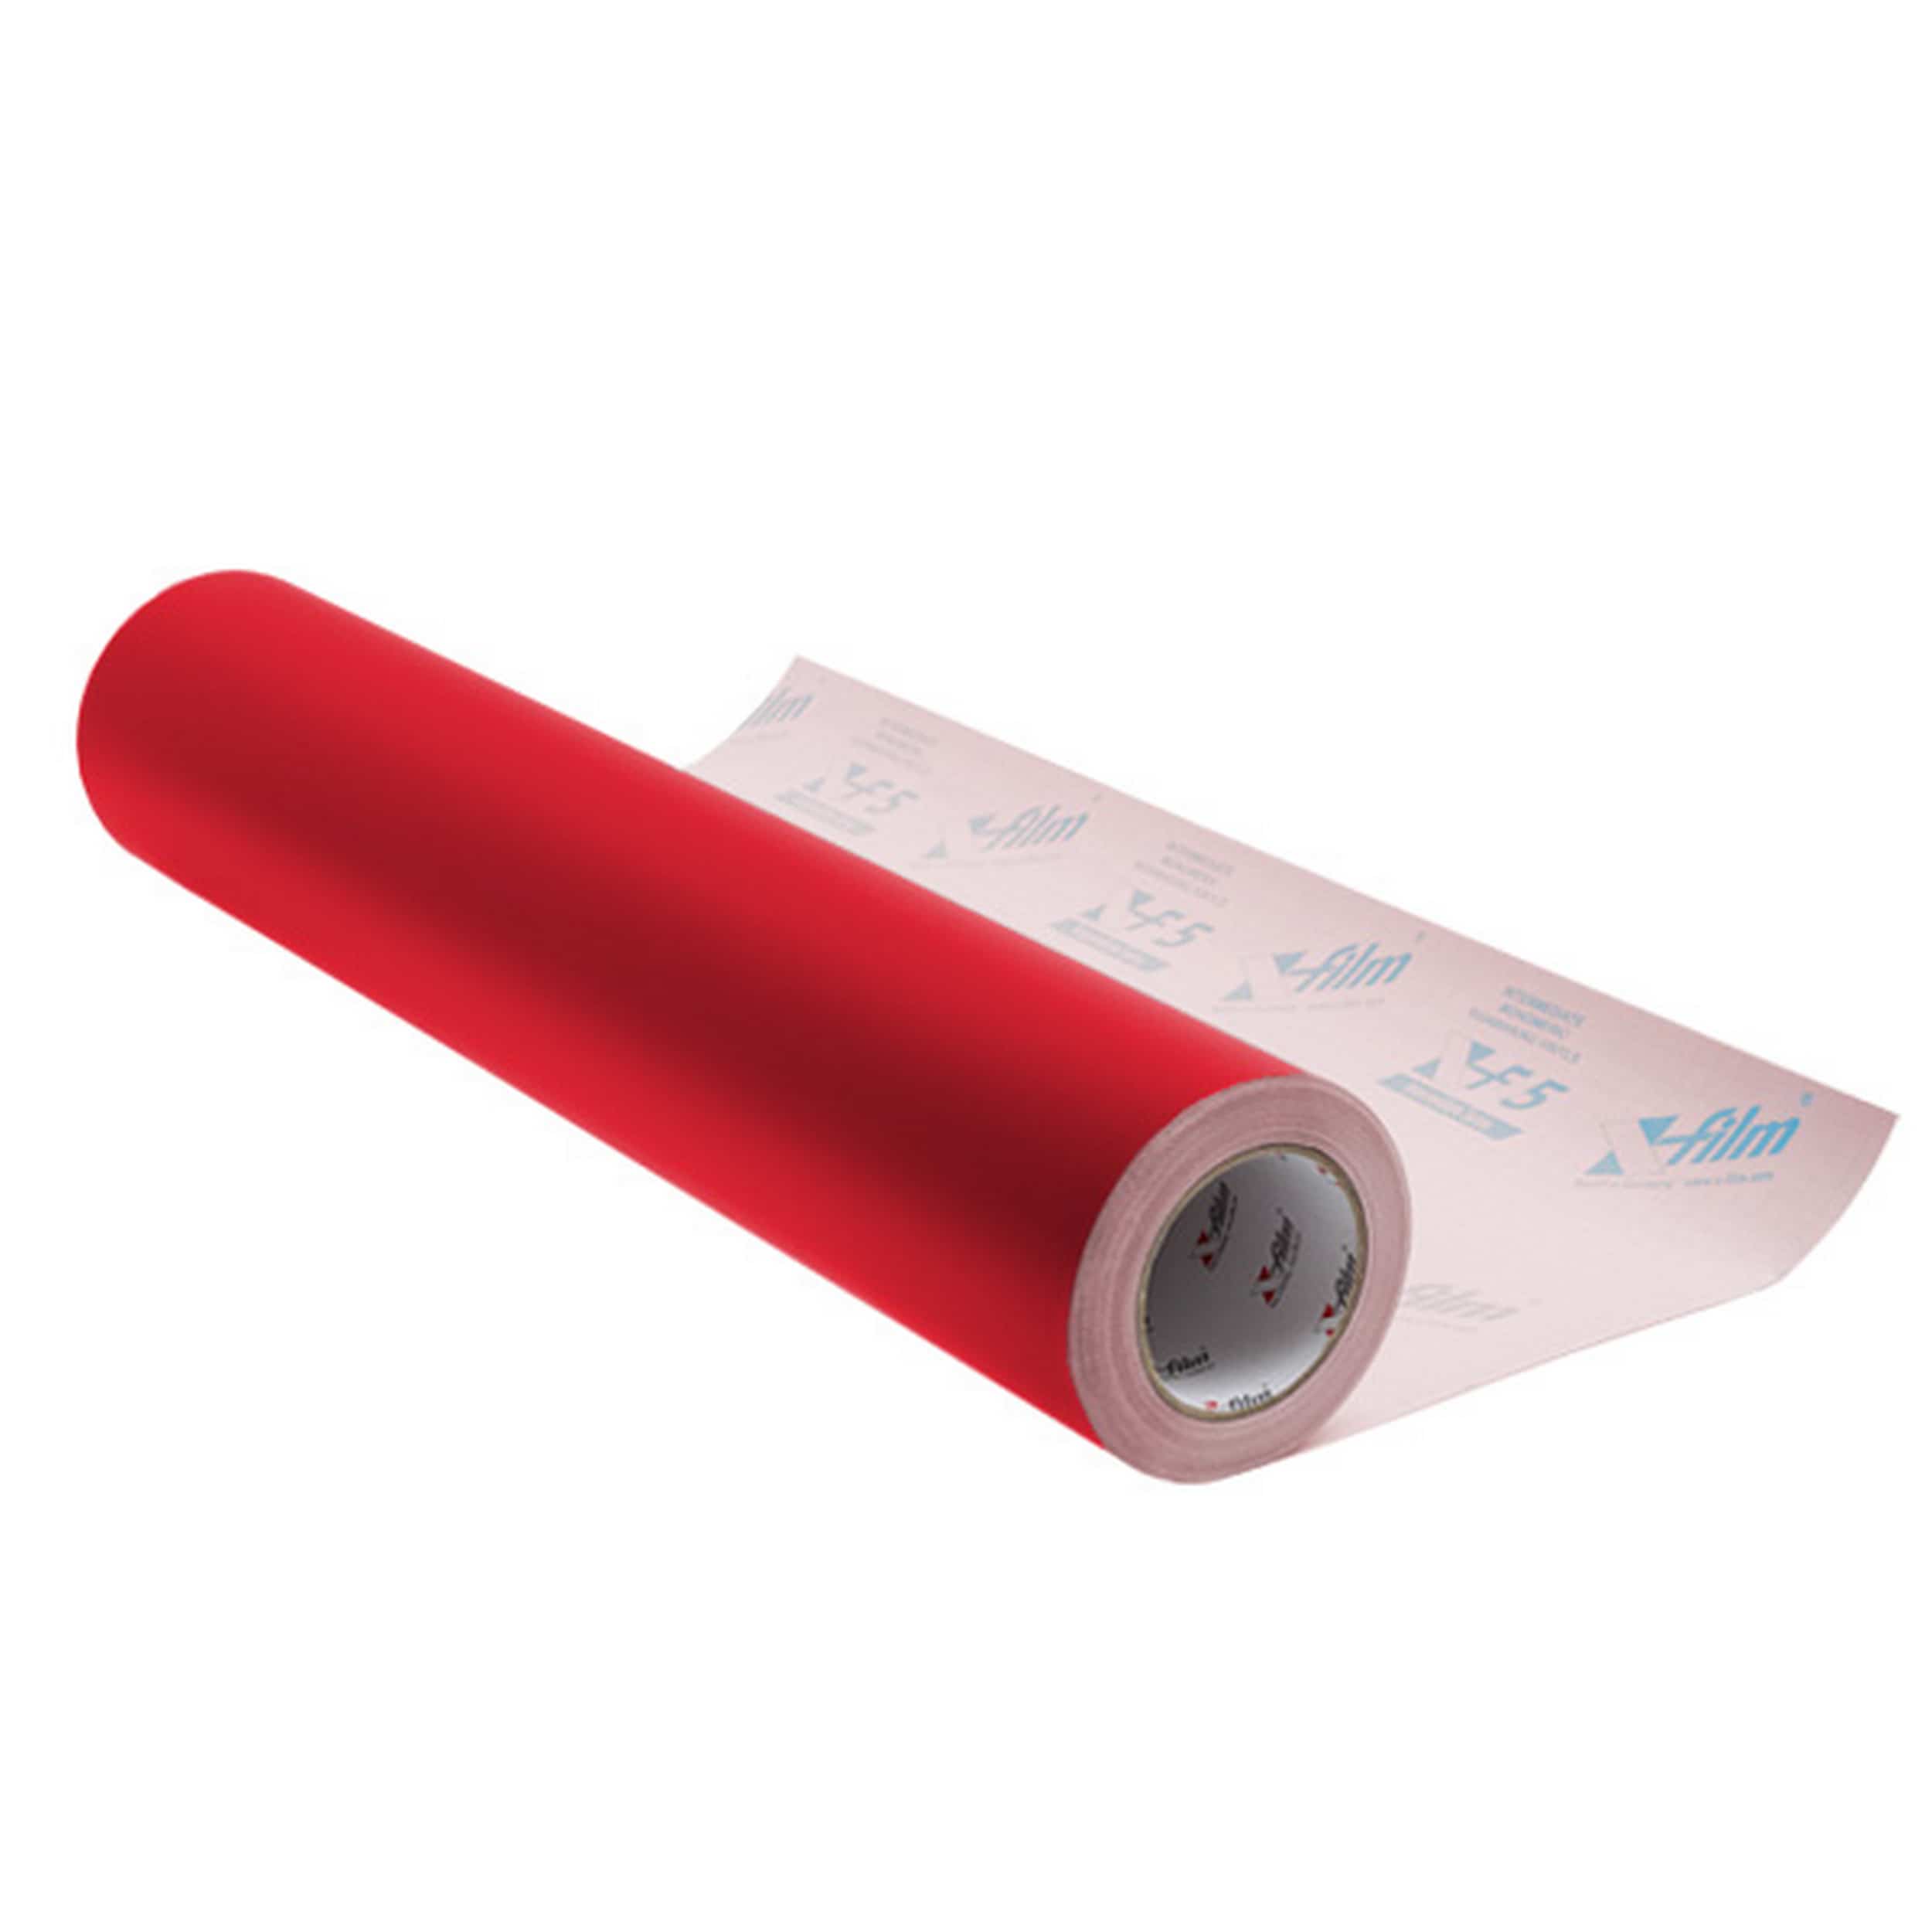 XF 5 - lámina de protección autoadhesiva - Color: 5051 = rojo (RAL 3002) - adecuado para superficies lisas y planas, se puede usar tanto en ...